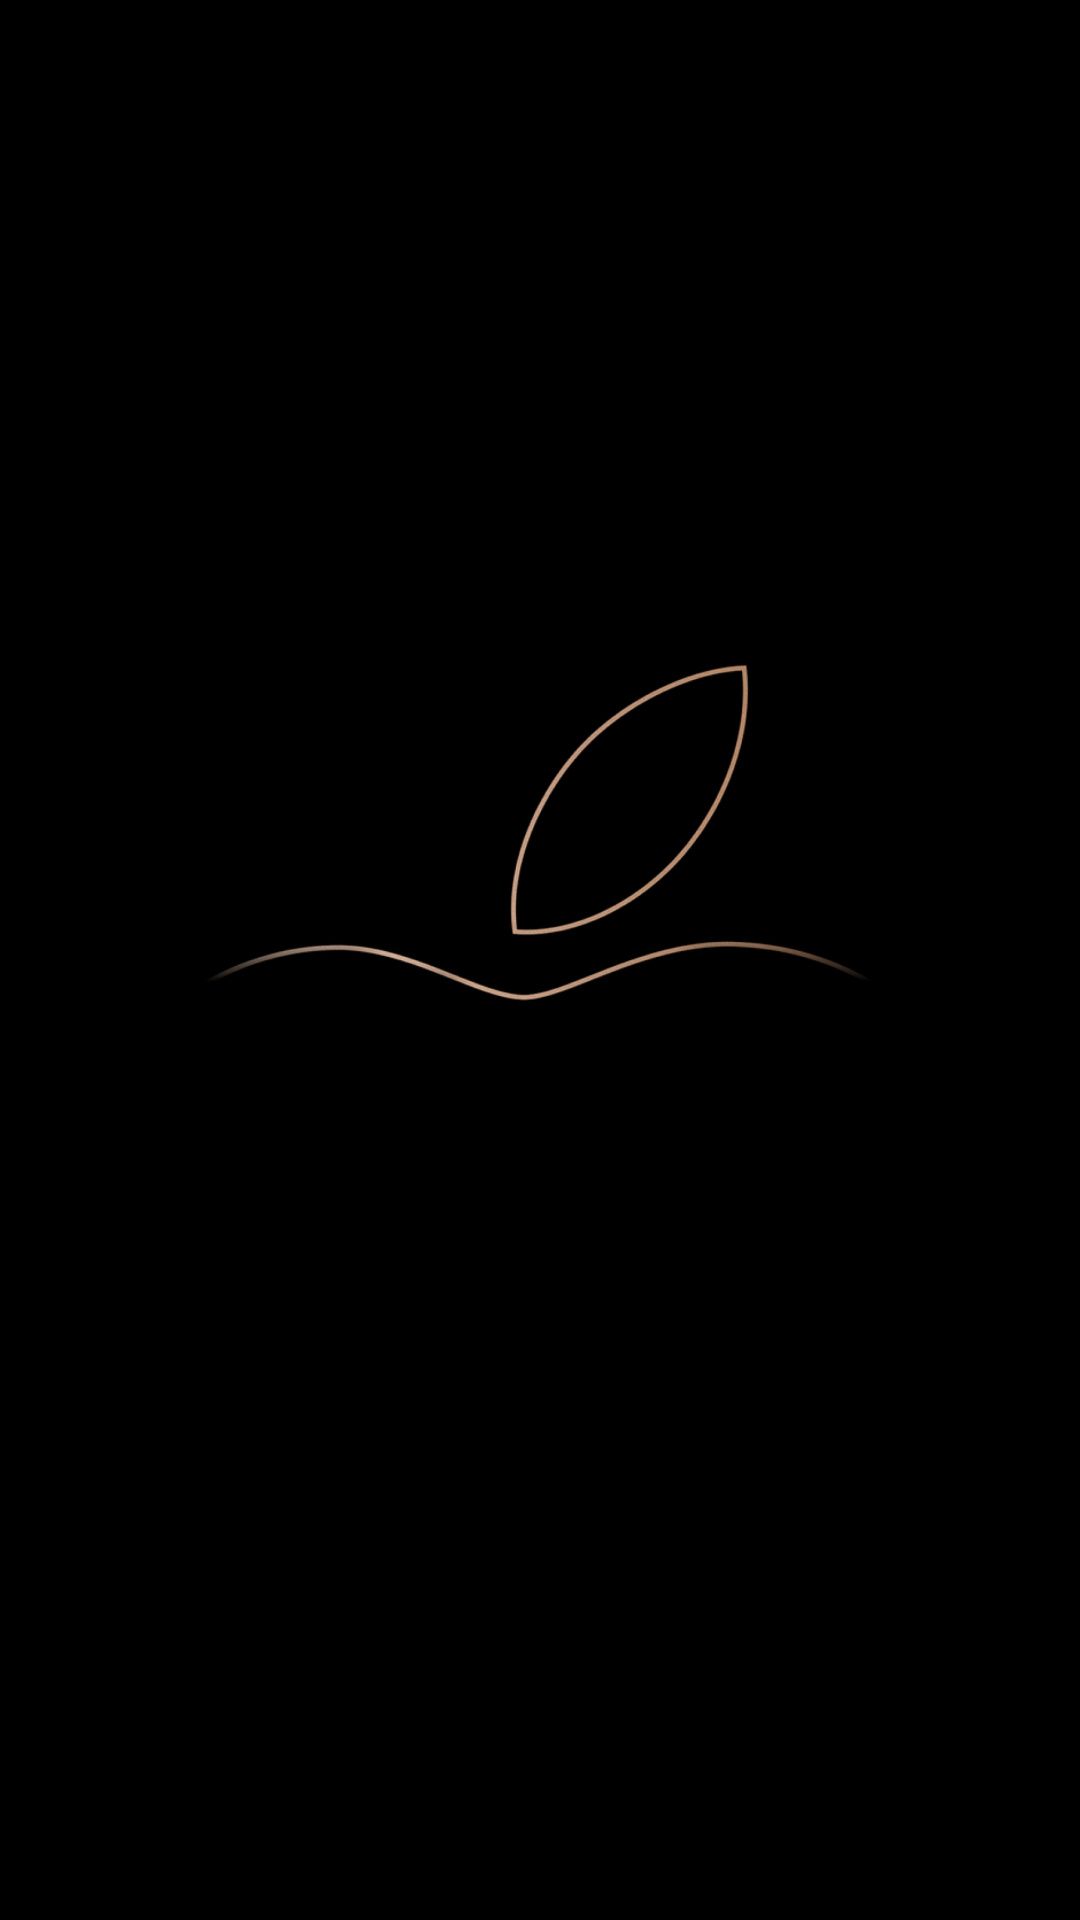 Apple, logo, minimal, dark wallpaper. Apple logo wallpaper iphone, iPhone 6 plus wallpaper, iPhone wallpaper video